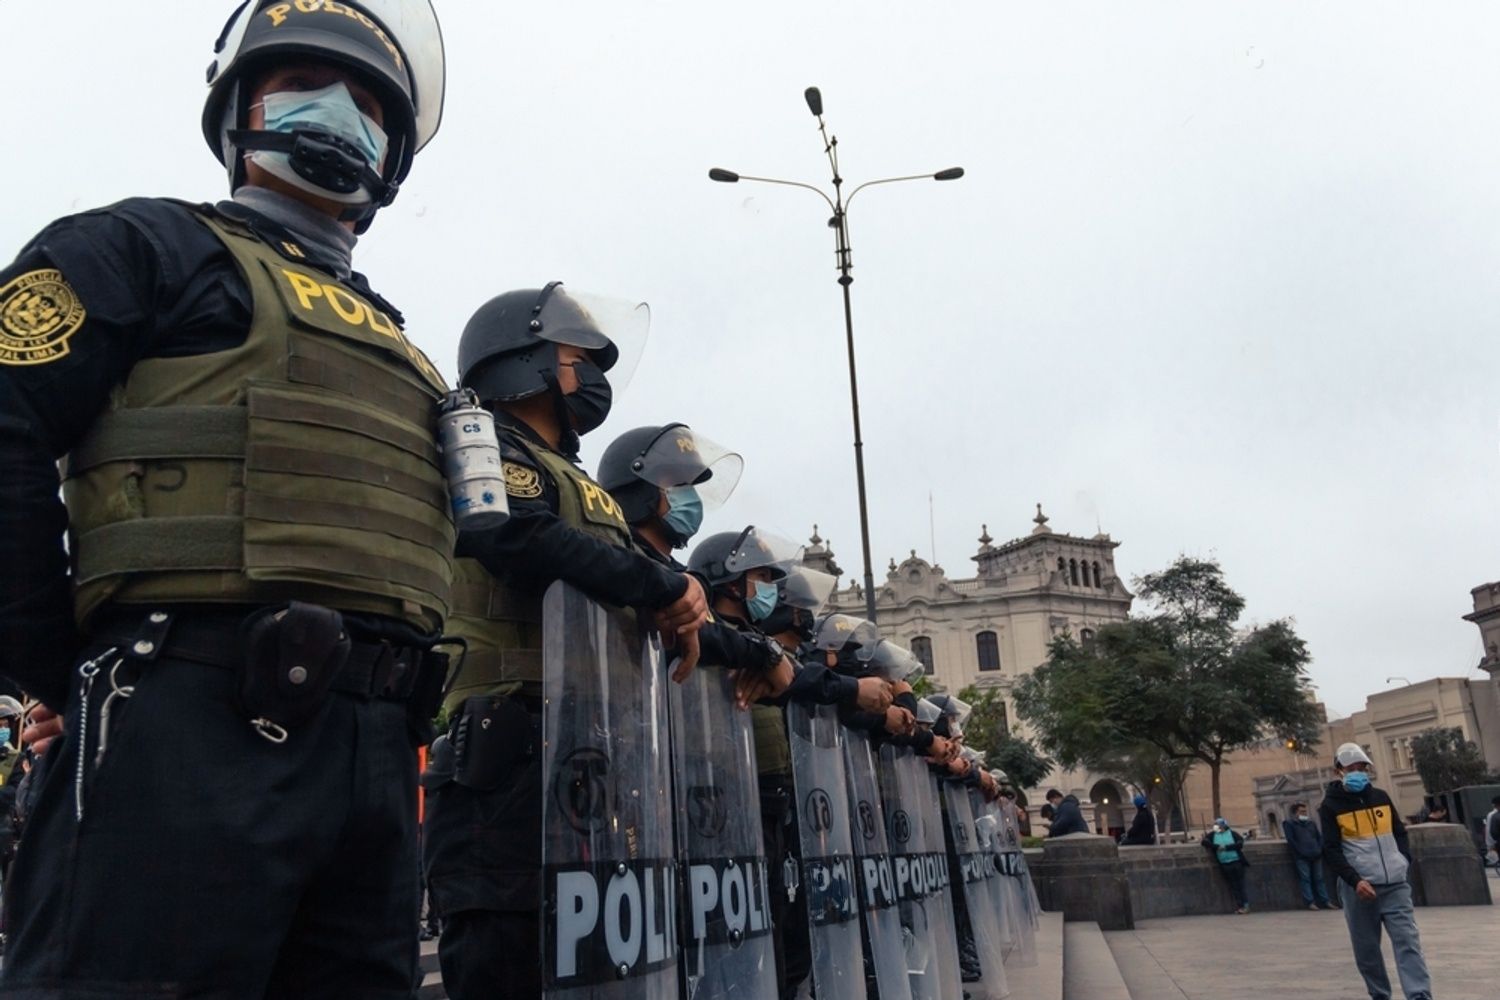 Police in Peru